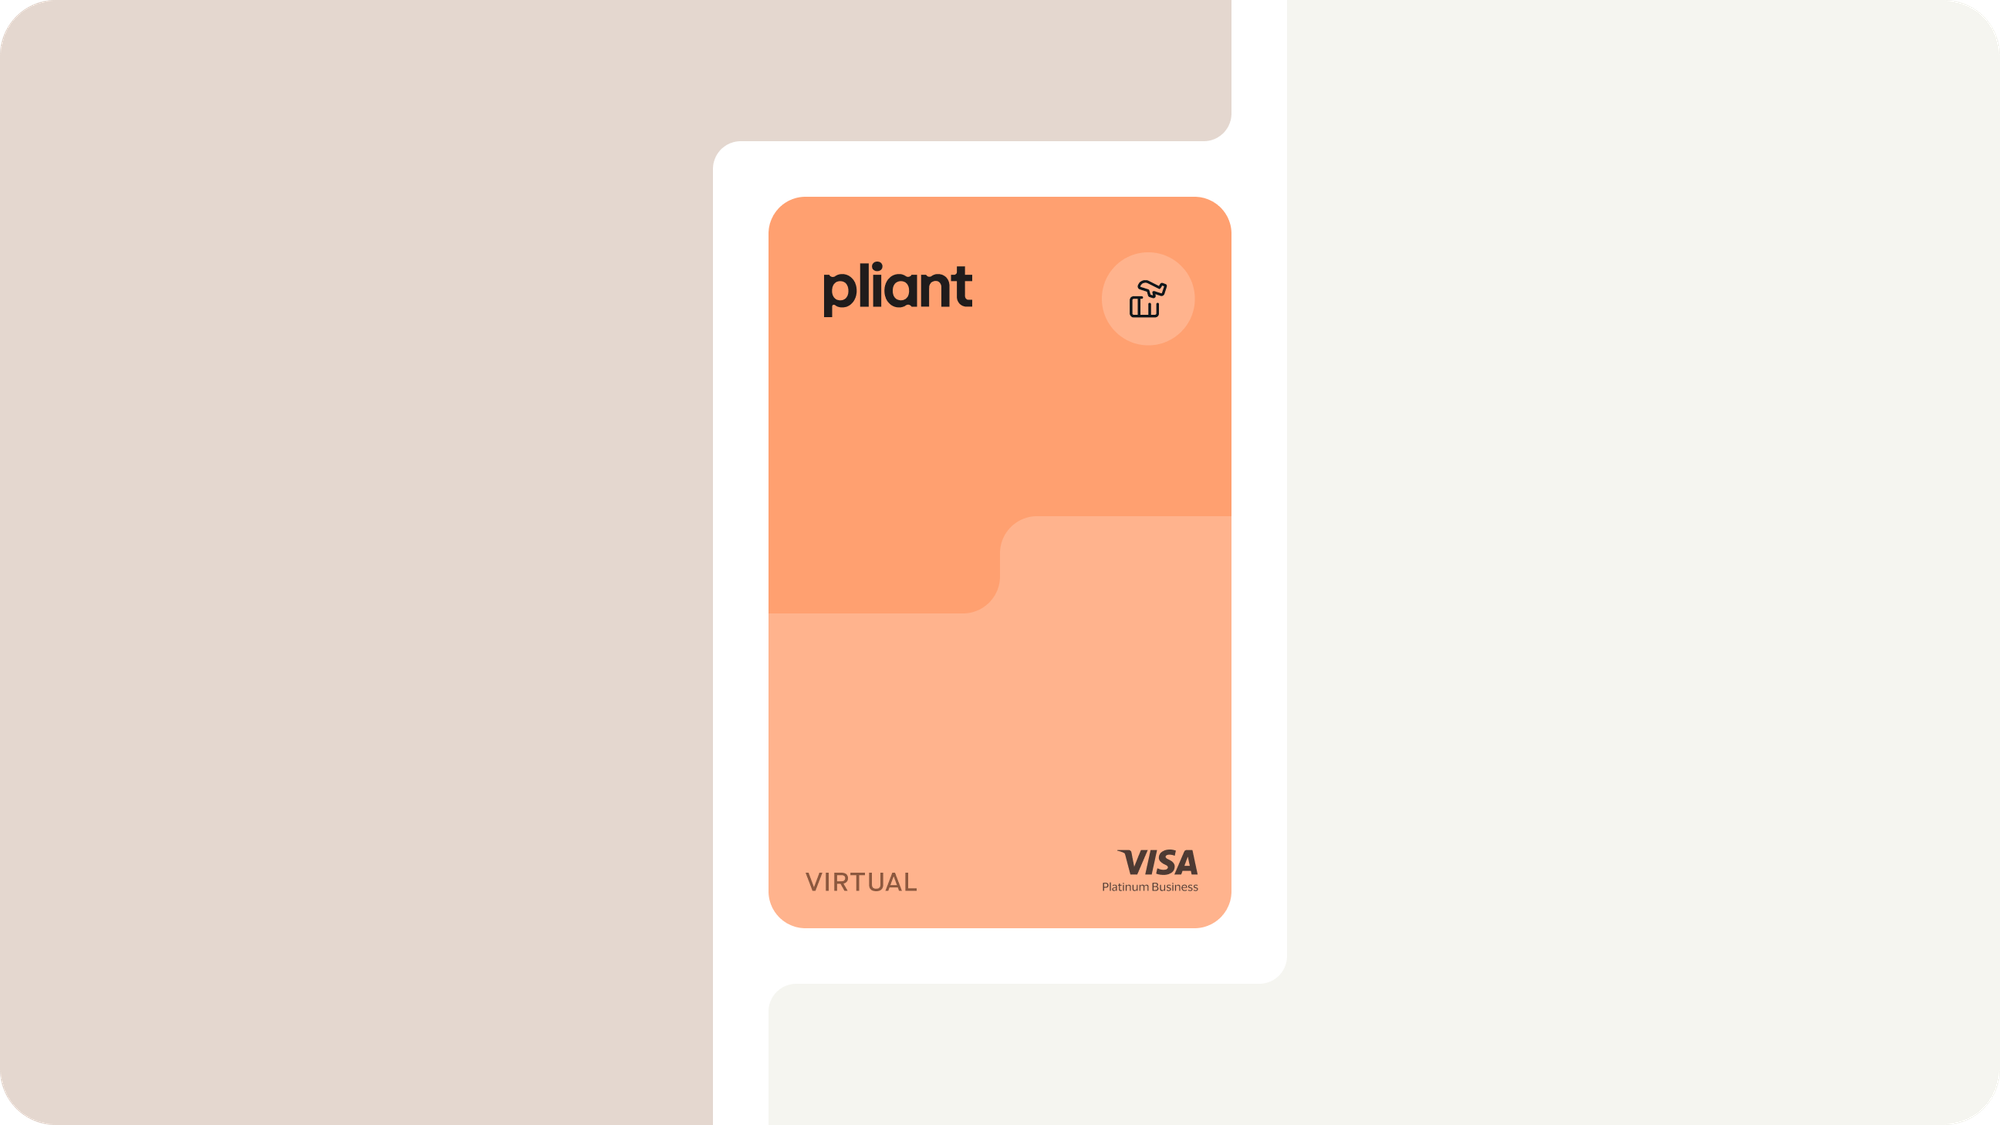 Travel Purchasing Cards von Pliant sind virtuelle Visa Platinum Business-Kreditkarten, die speziell auf die Bedürfnisse von Reisebüros und Unternehmen mit häufigen Reisebuchungen zugeschnitten sind.